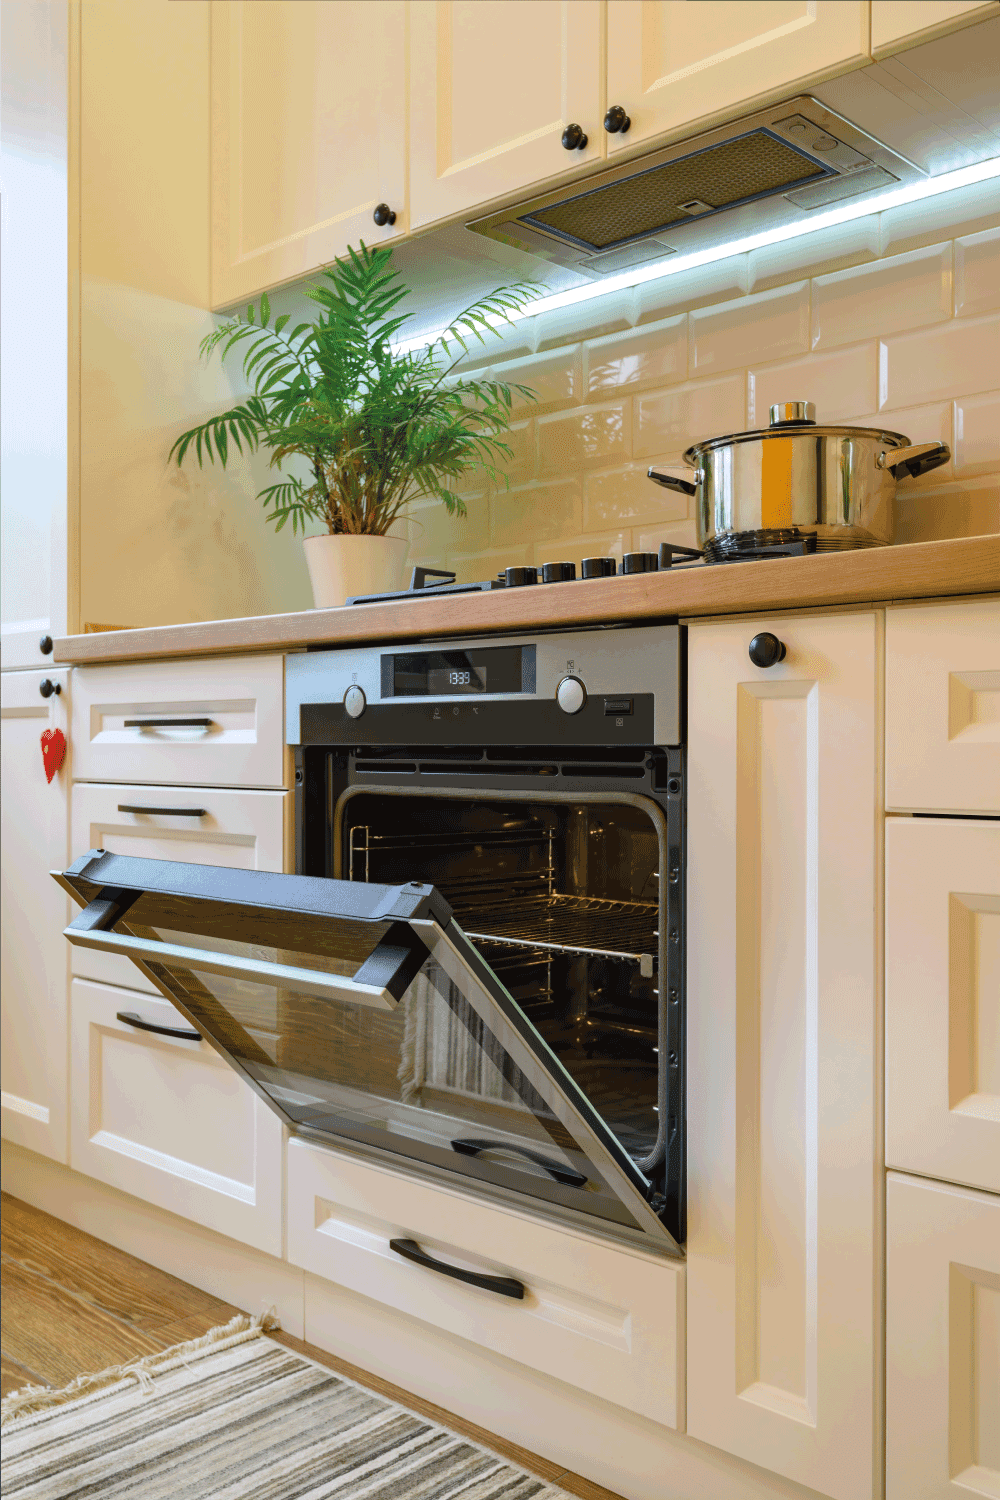 Cozy modern kitchen interior, closeup to open oven's door